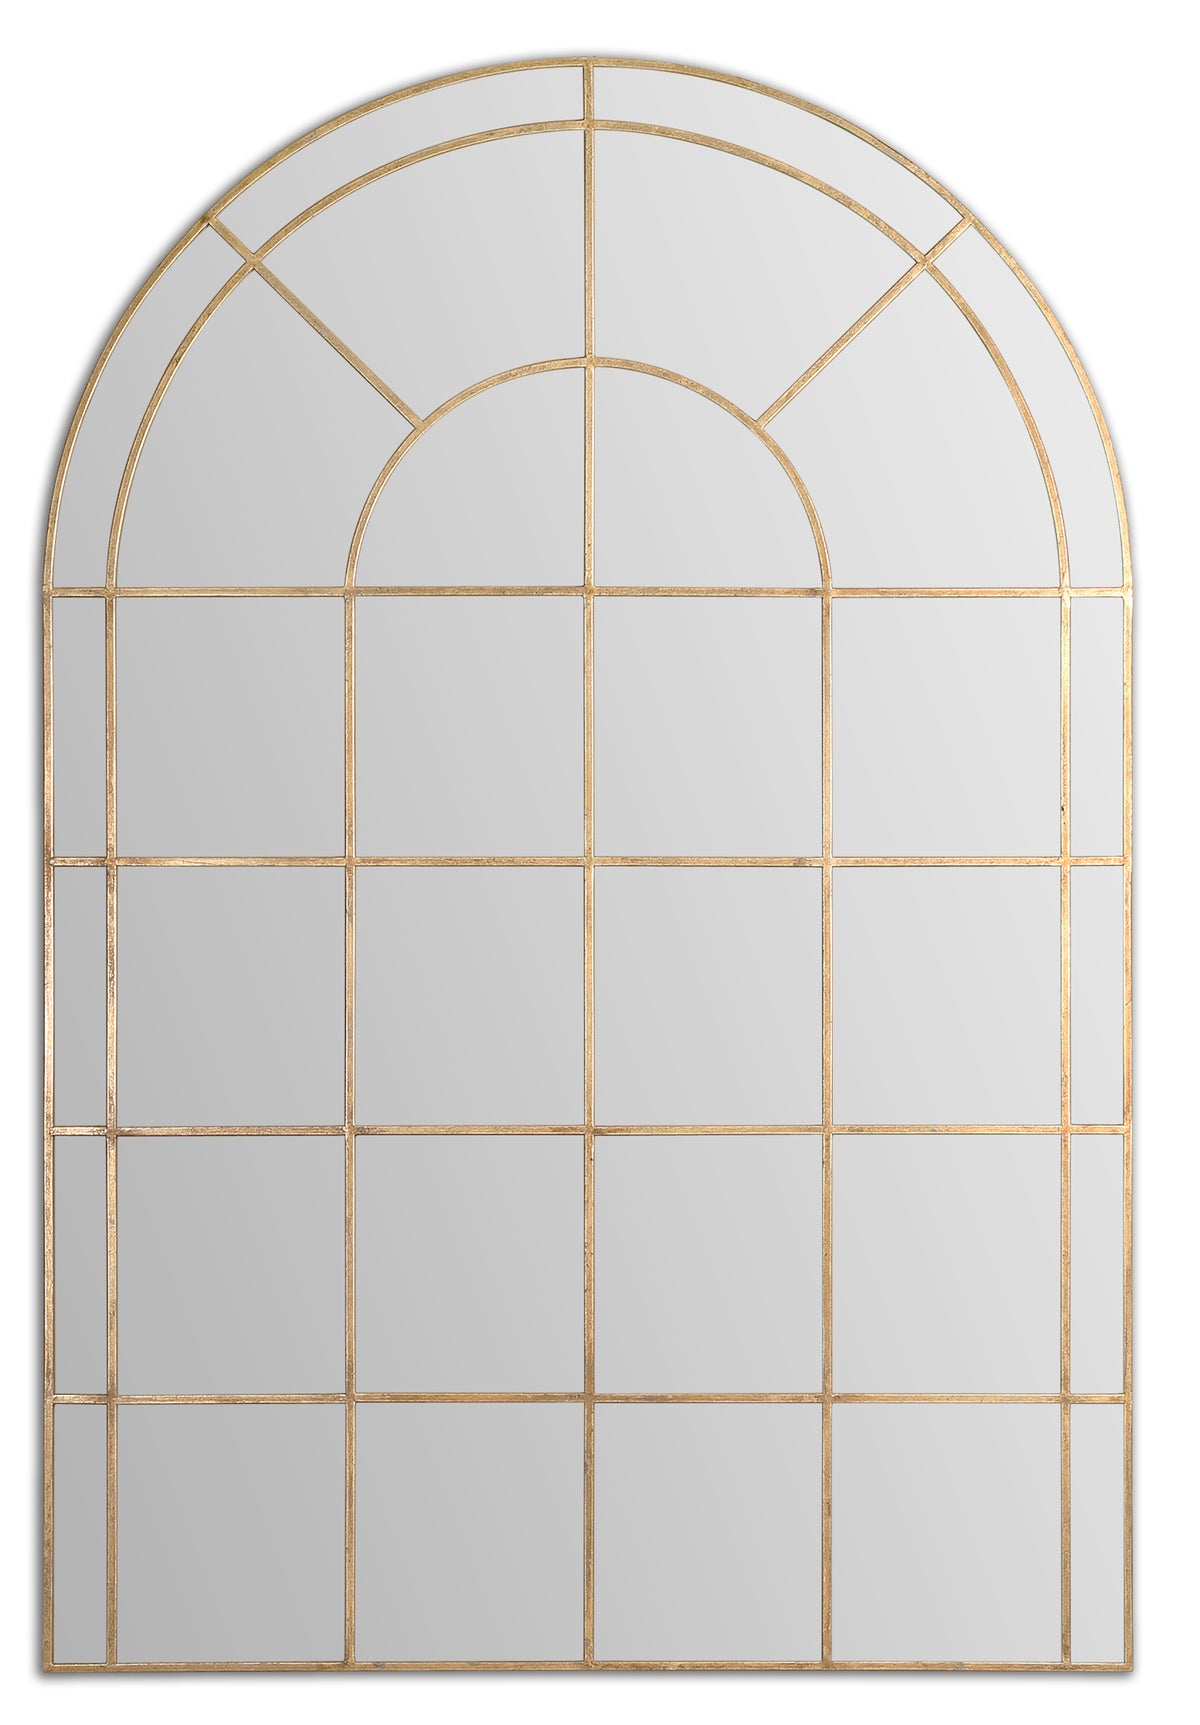 Grantola Arch Mirror